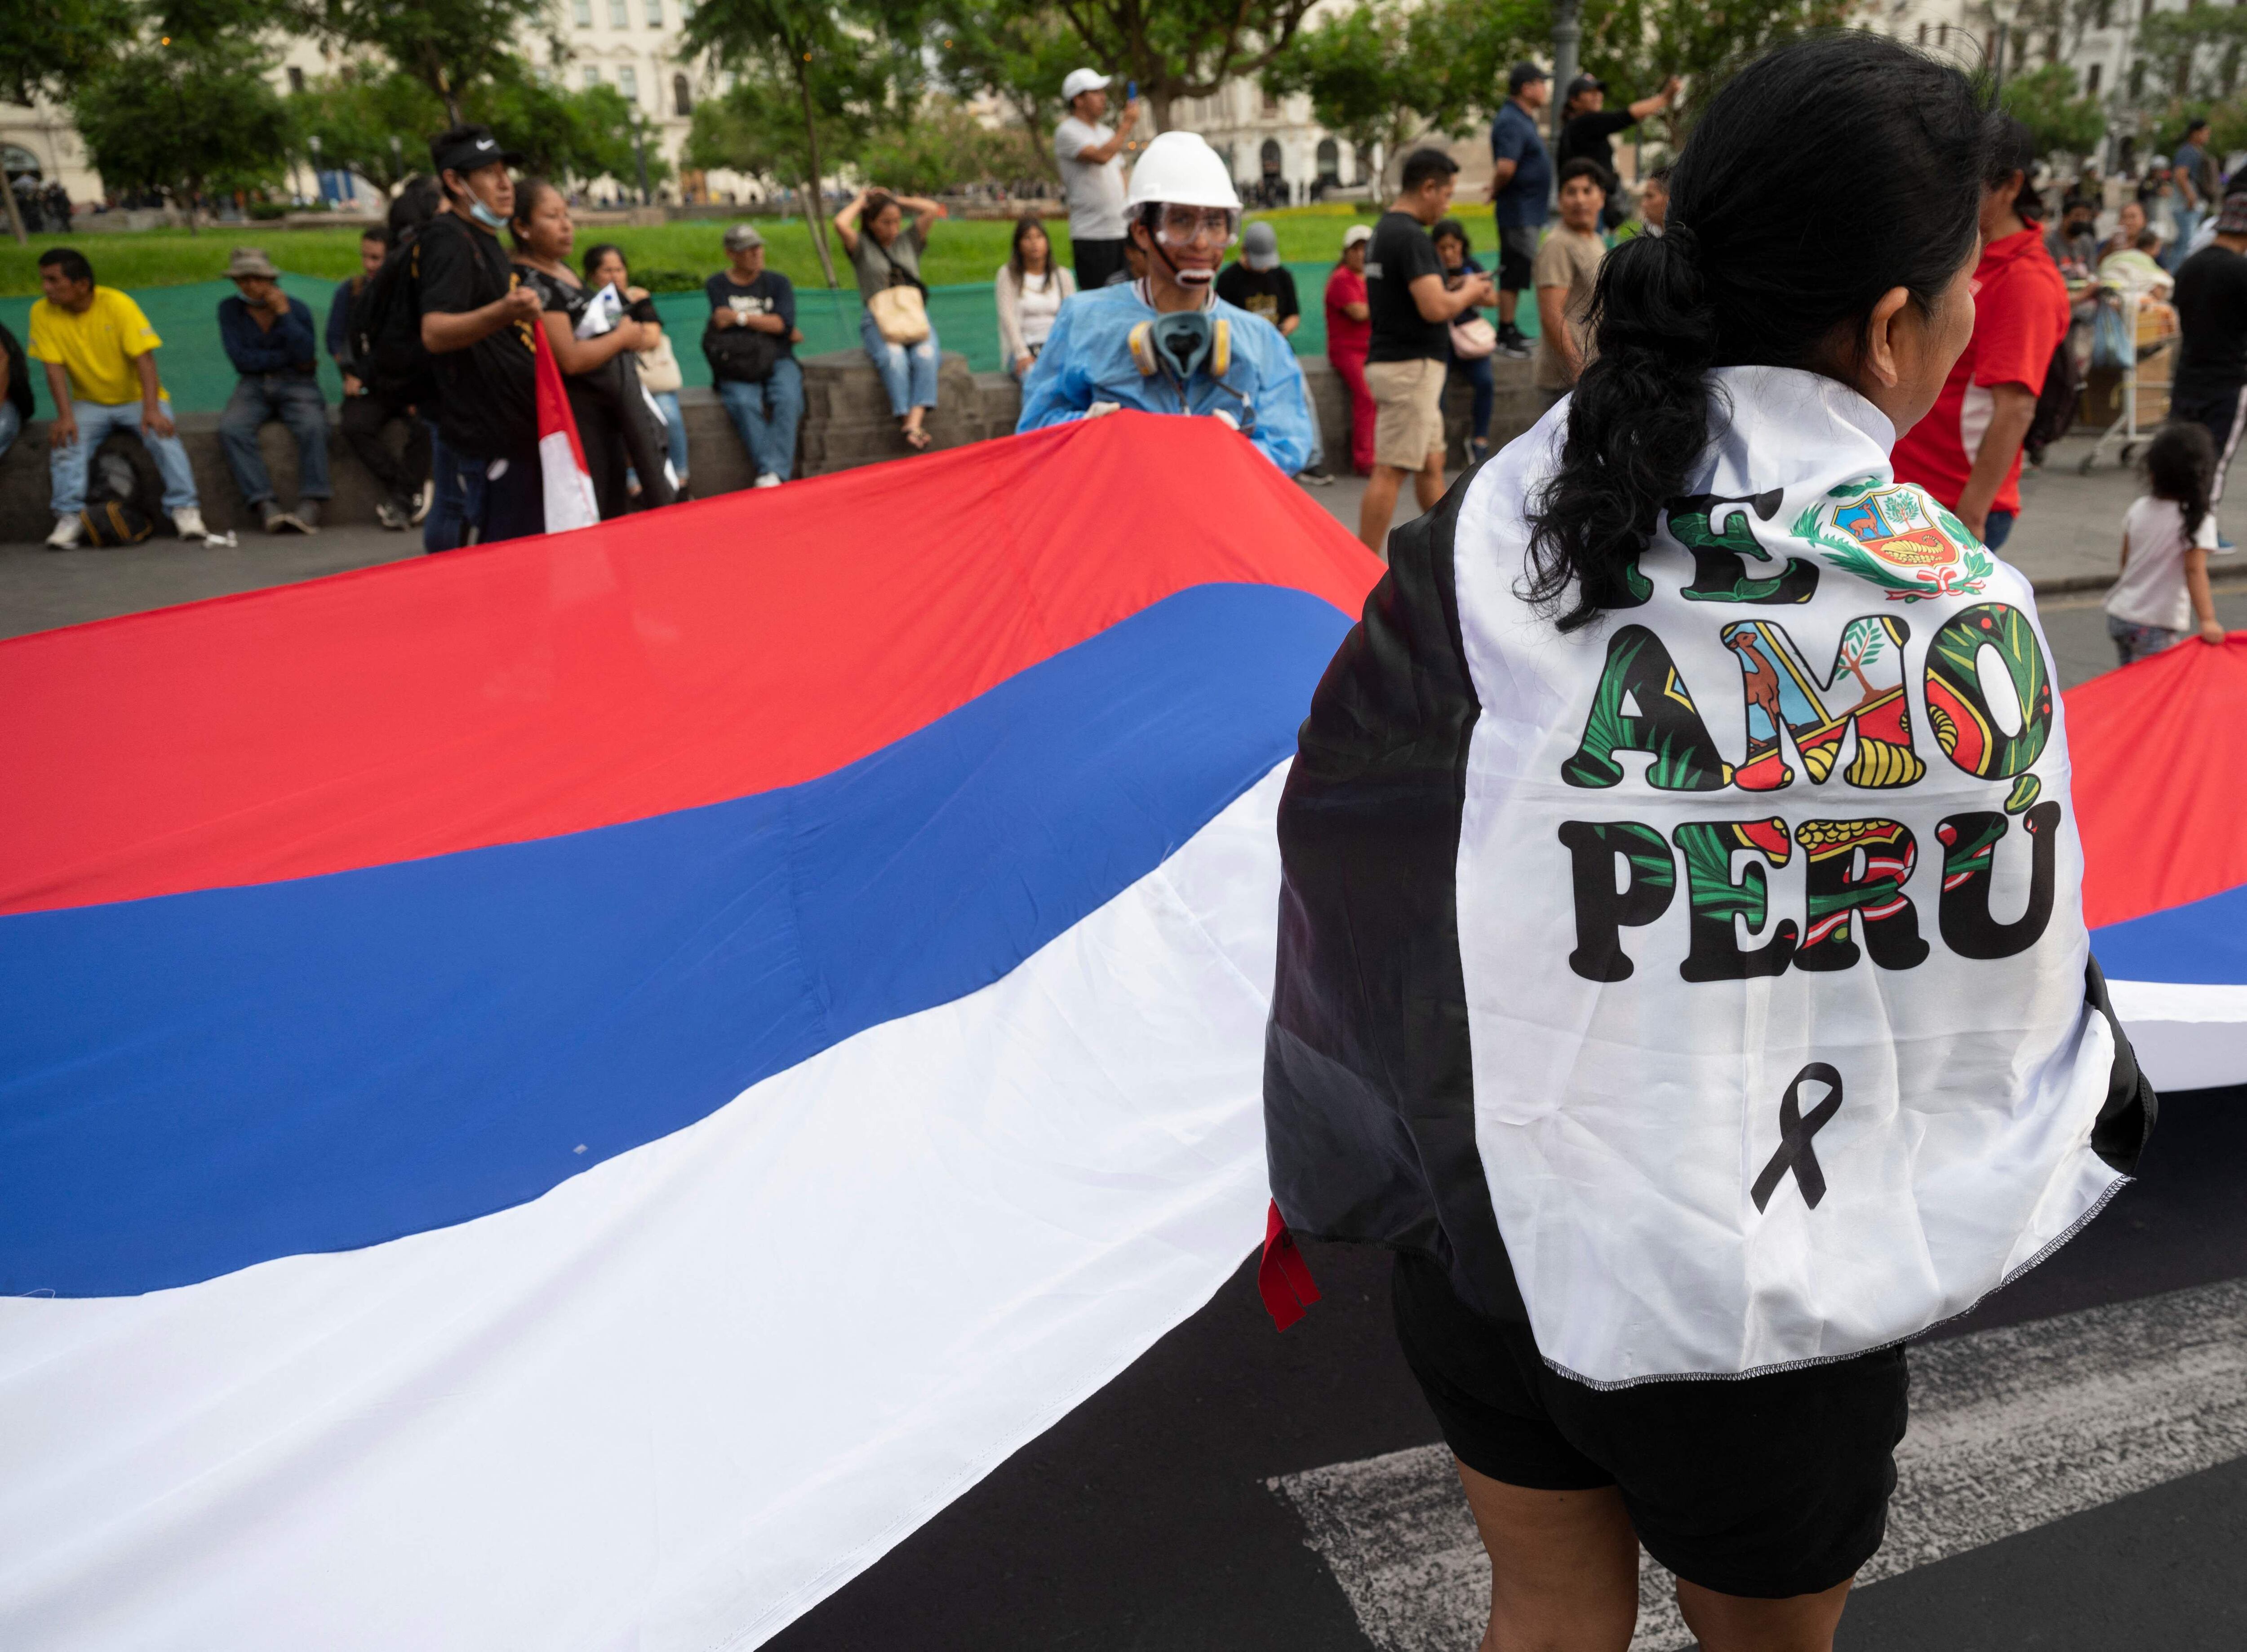 Cientos de manifestantes se concentraron en los accesos a Lima para asistir este sábado a una marcha que prometen "serán los más grandes" y "con toda la sangre", según los organizadores de las protestas que piden la renuncia de la presidenta Dina Boluarte y el cierre del Congreso.